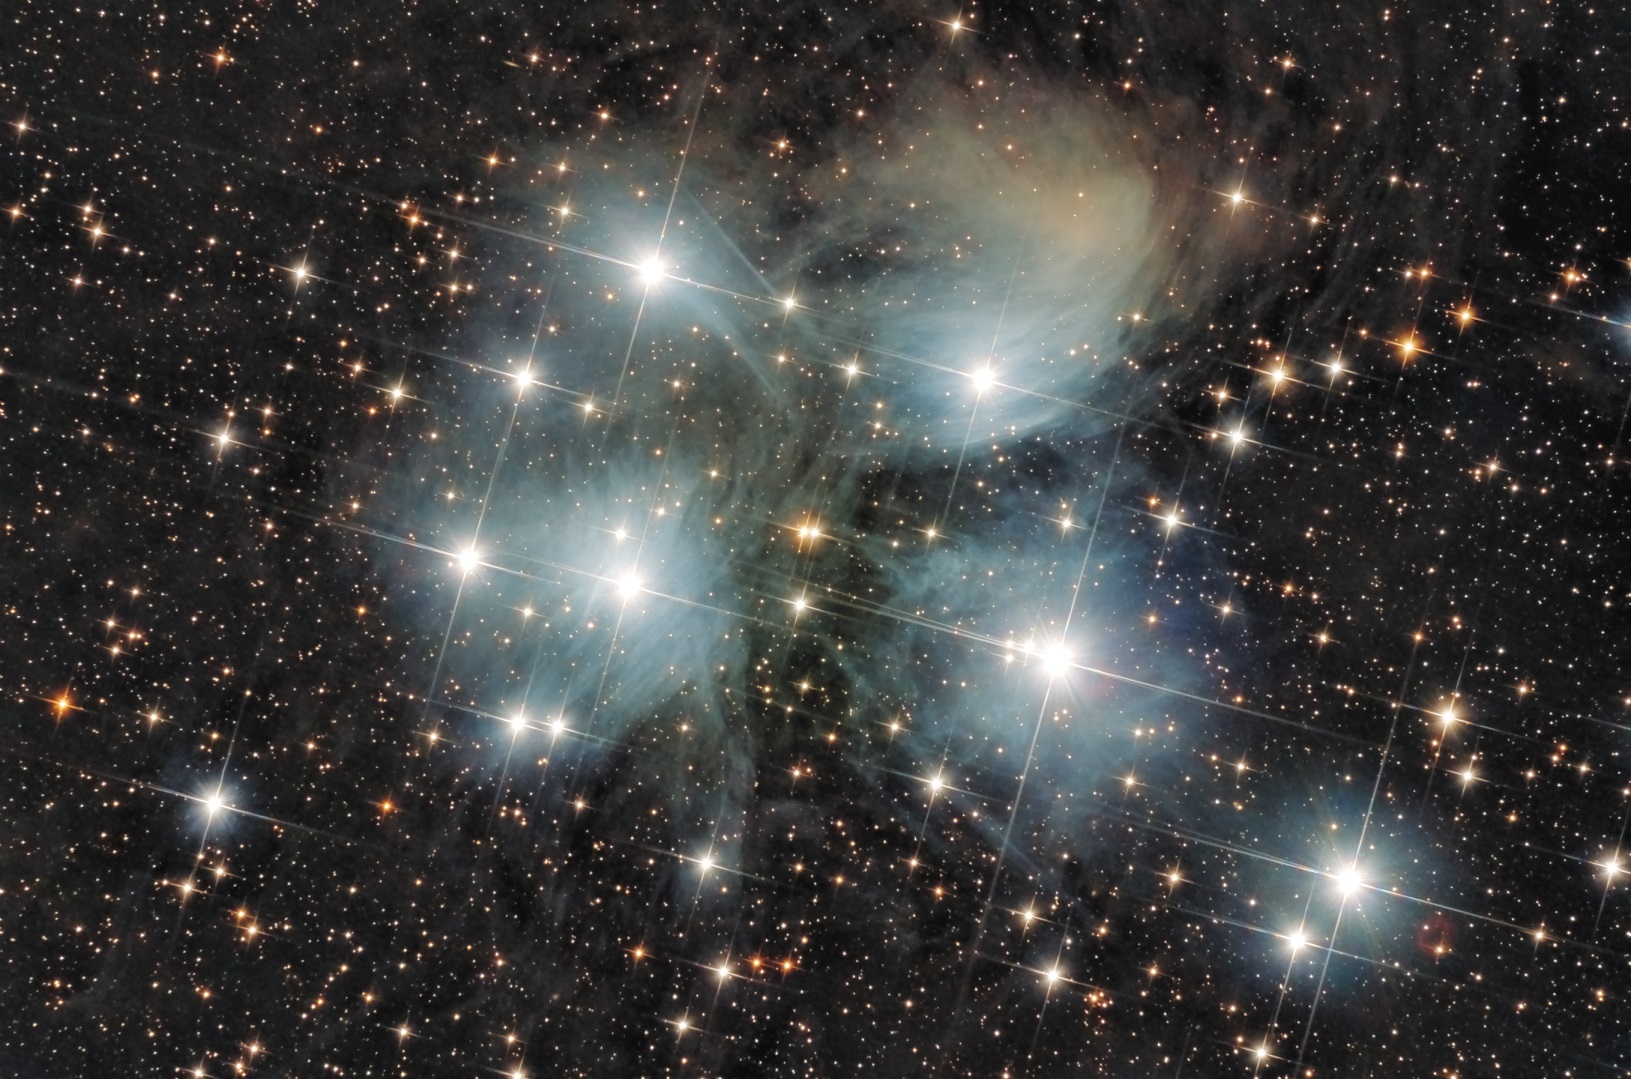 Das Siebengestirn M45 auch bekannt als Plejaden